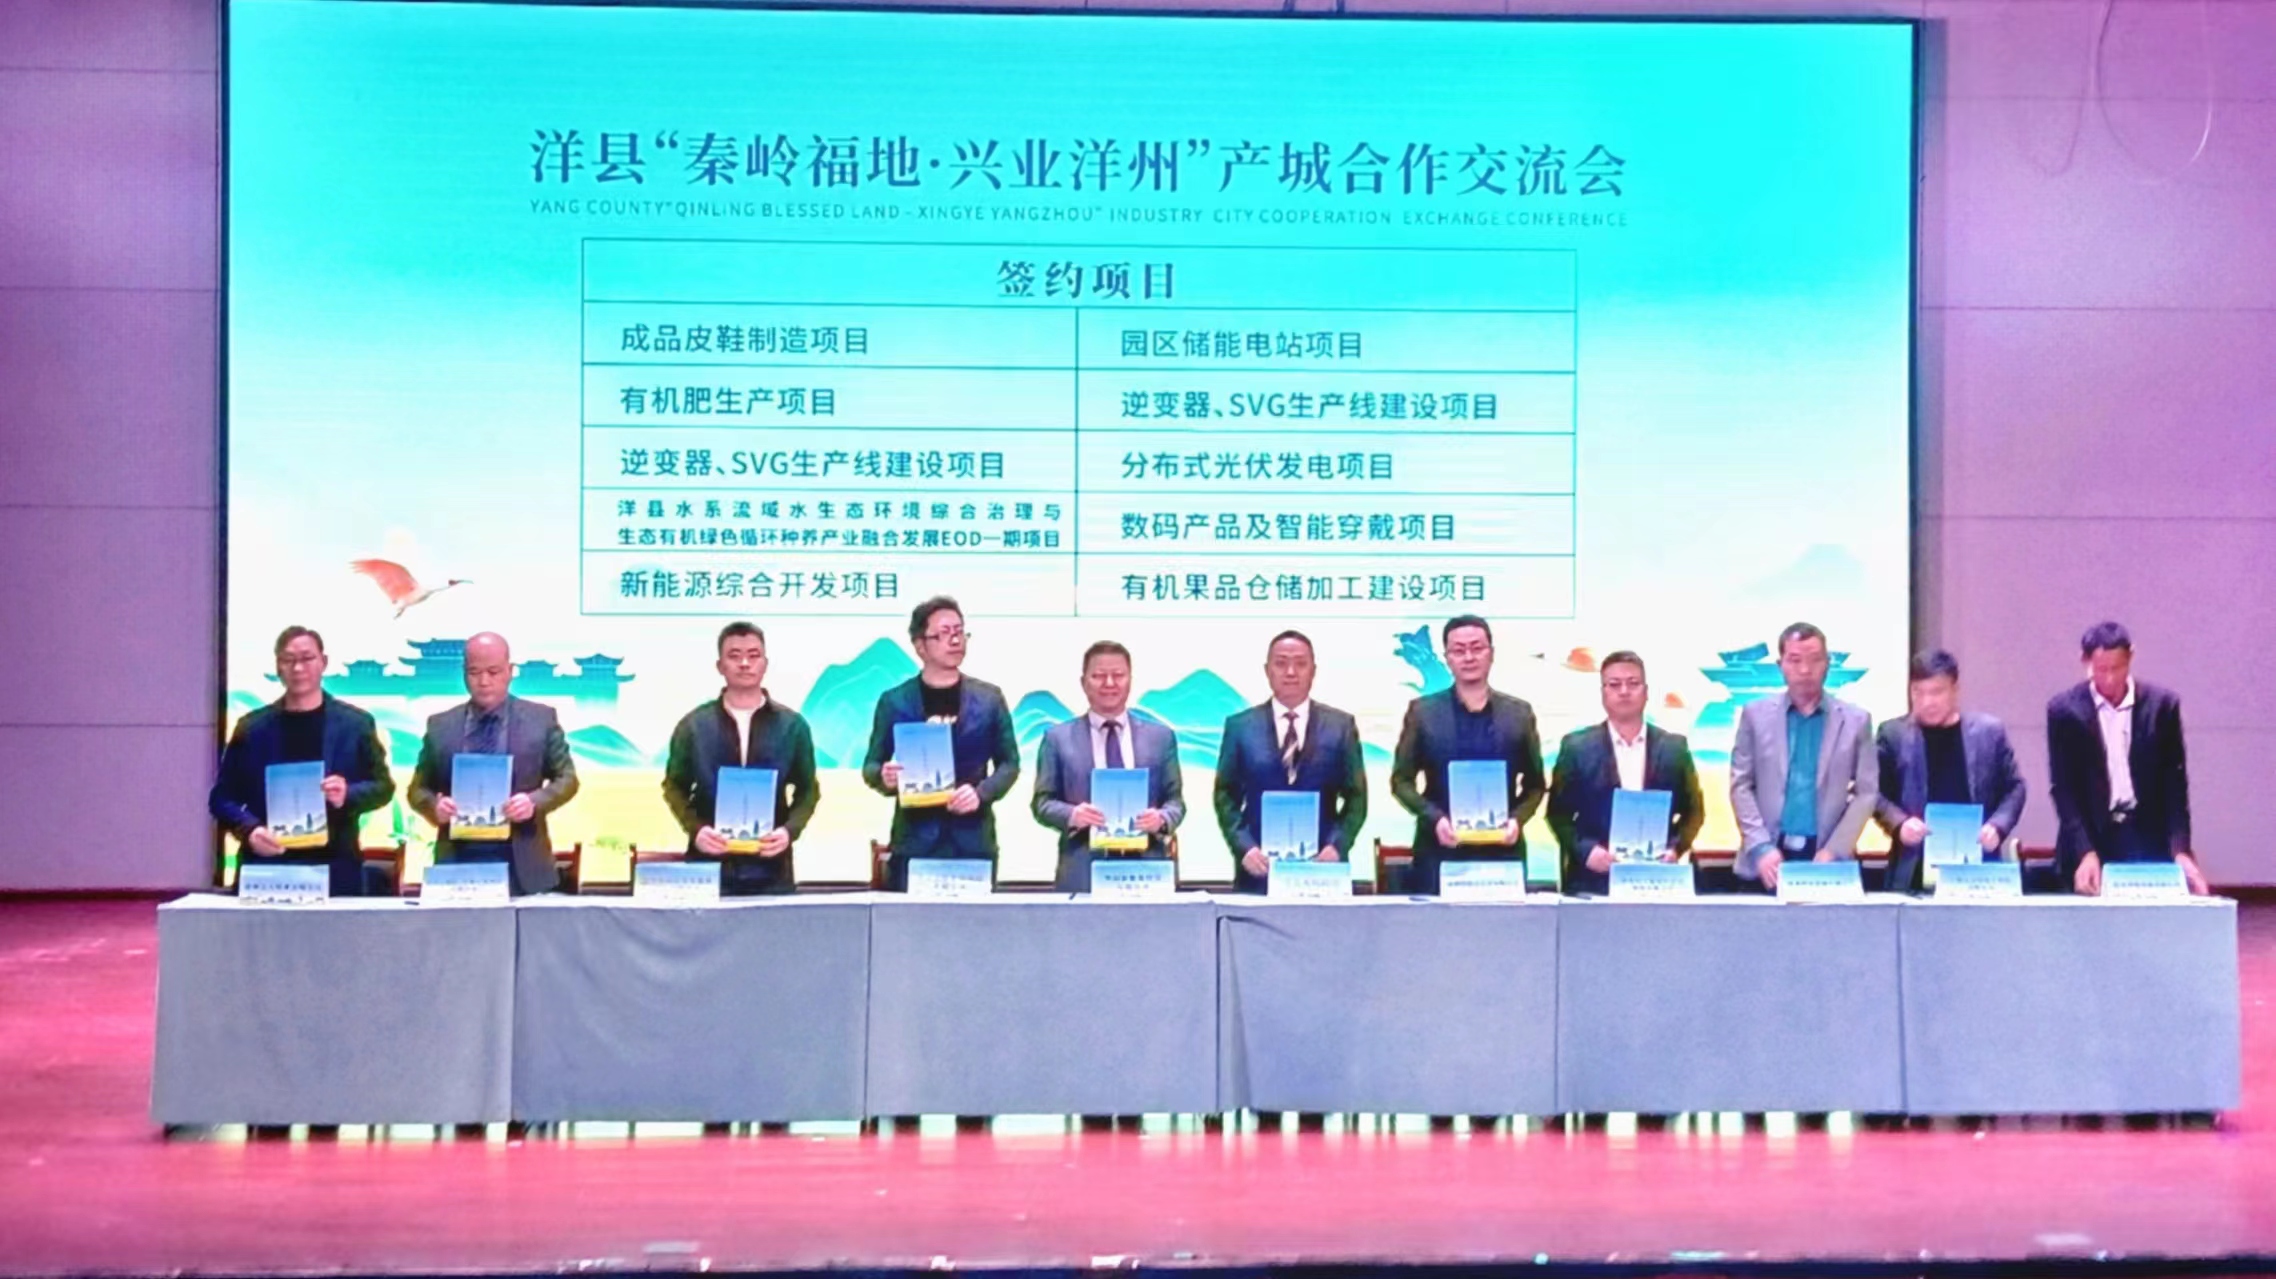 陝漢中洋縣舉辦產城合作交流會 簽約12項目引資33.6億元